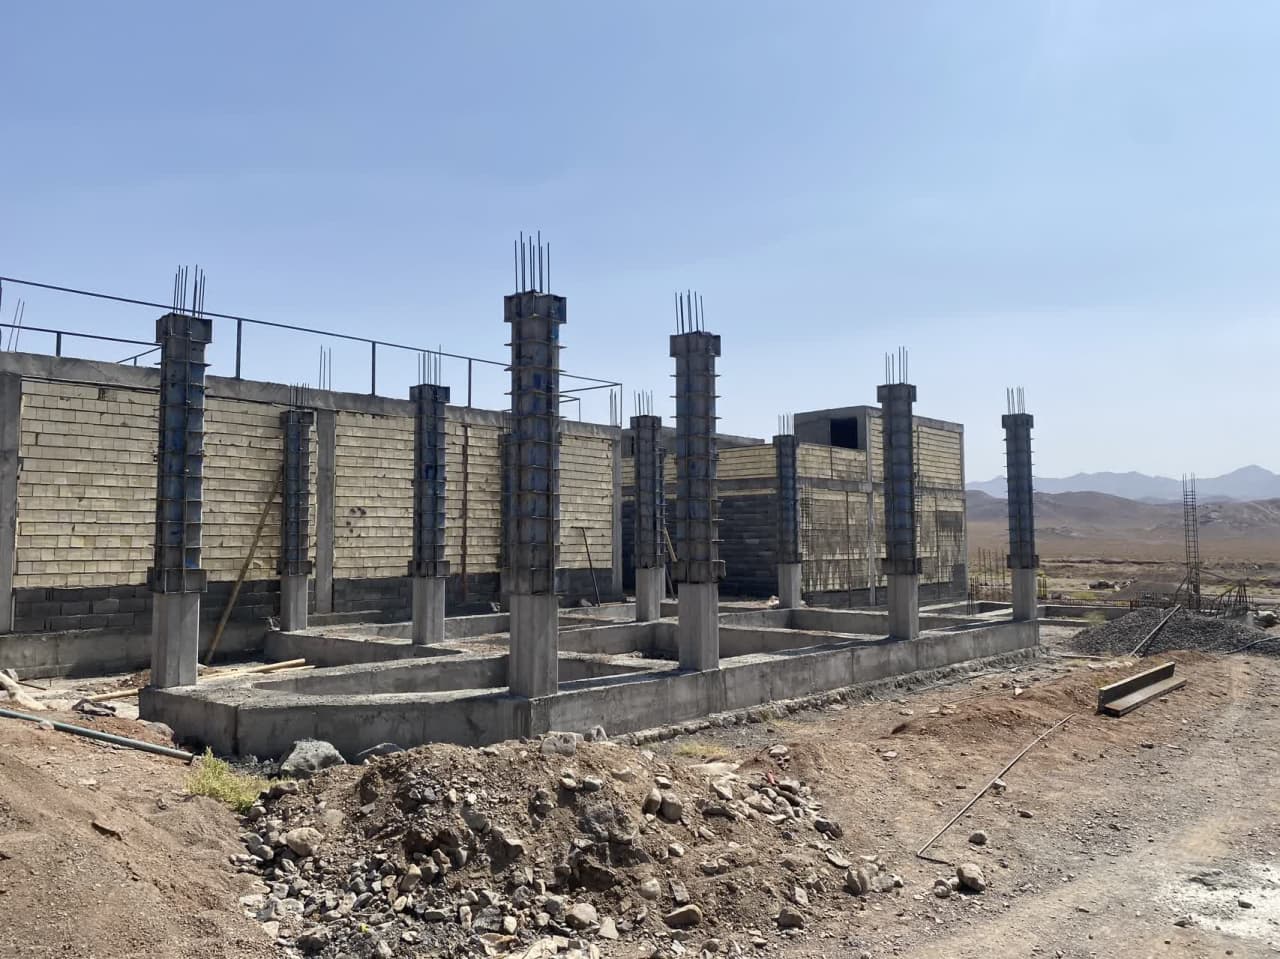 پیمانکار ساخت واحدهای مسکونی انبوه سازی روستای ظفرقند تغییر کرد